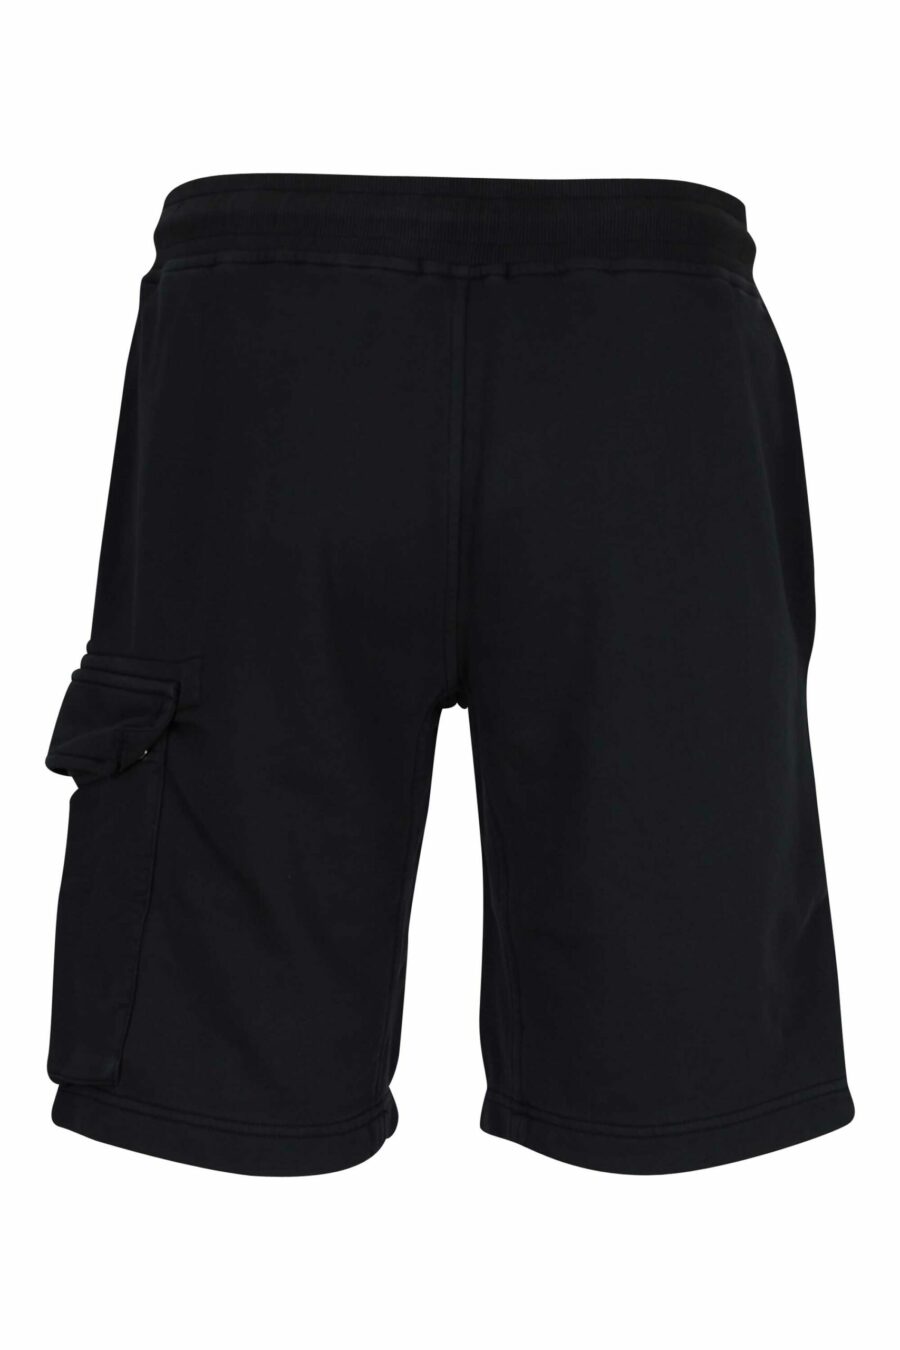 Pantalón de chándal corto negro estilo cargo con logo lente - 7620943730982 2 scaled